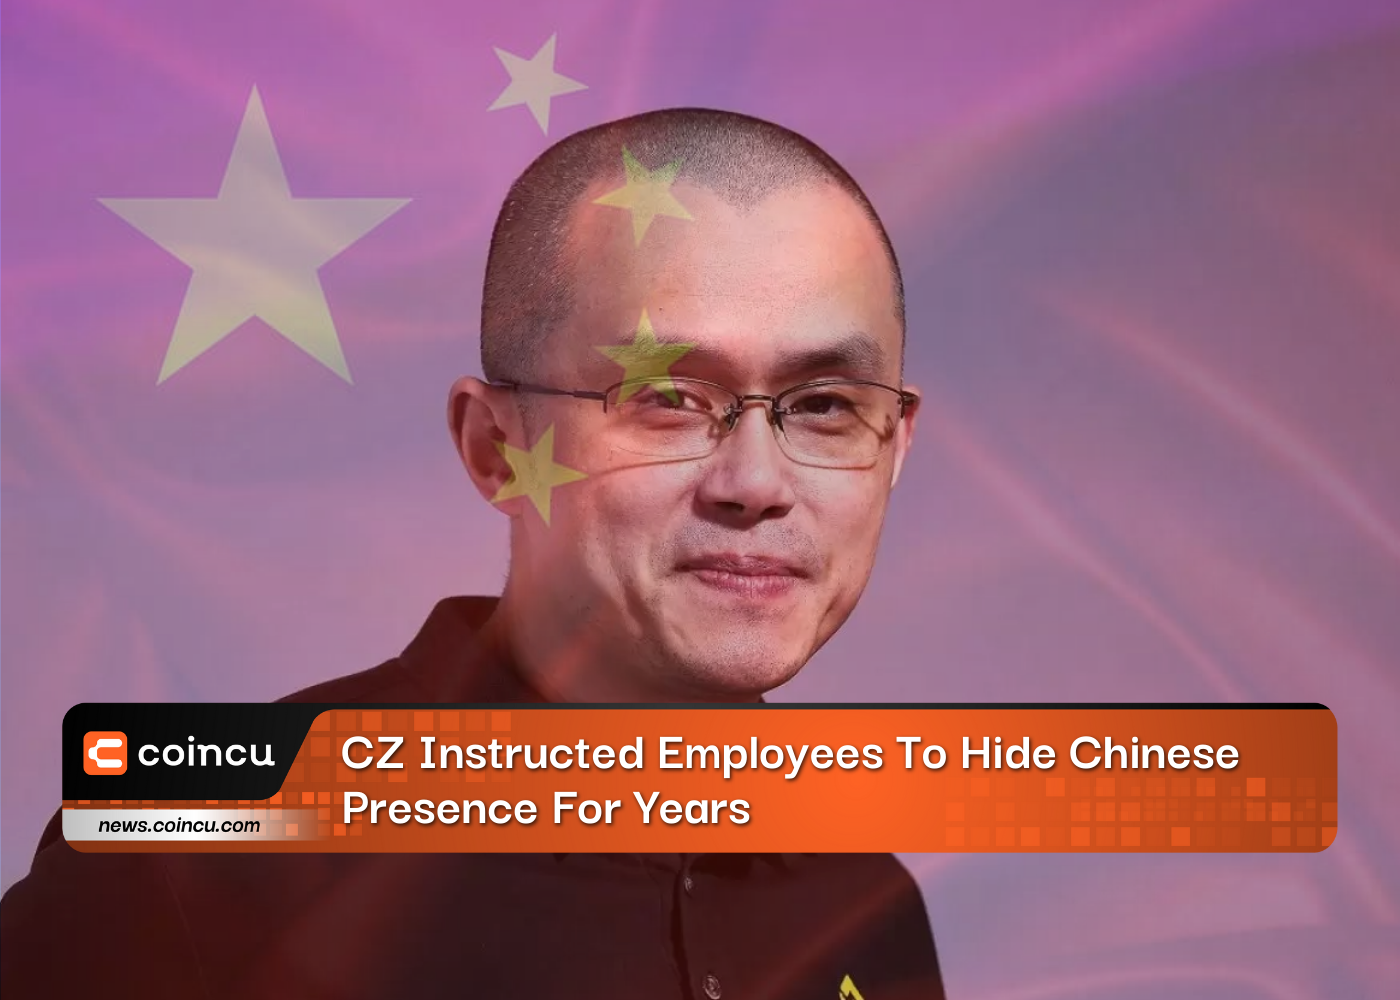 CZ ordenó a sus empleados ocultar la presencia china durante años